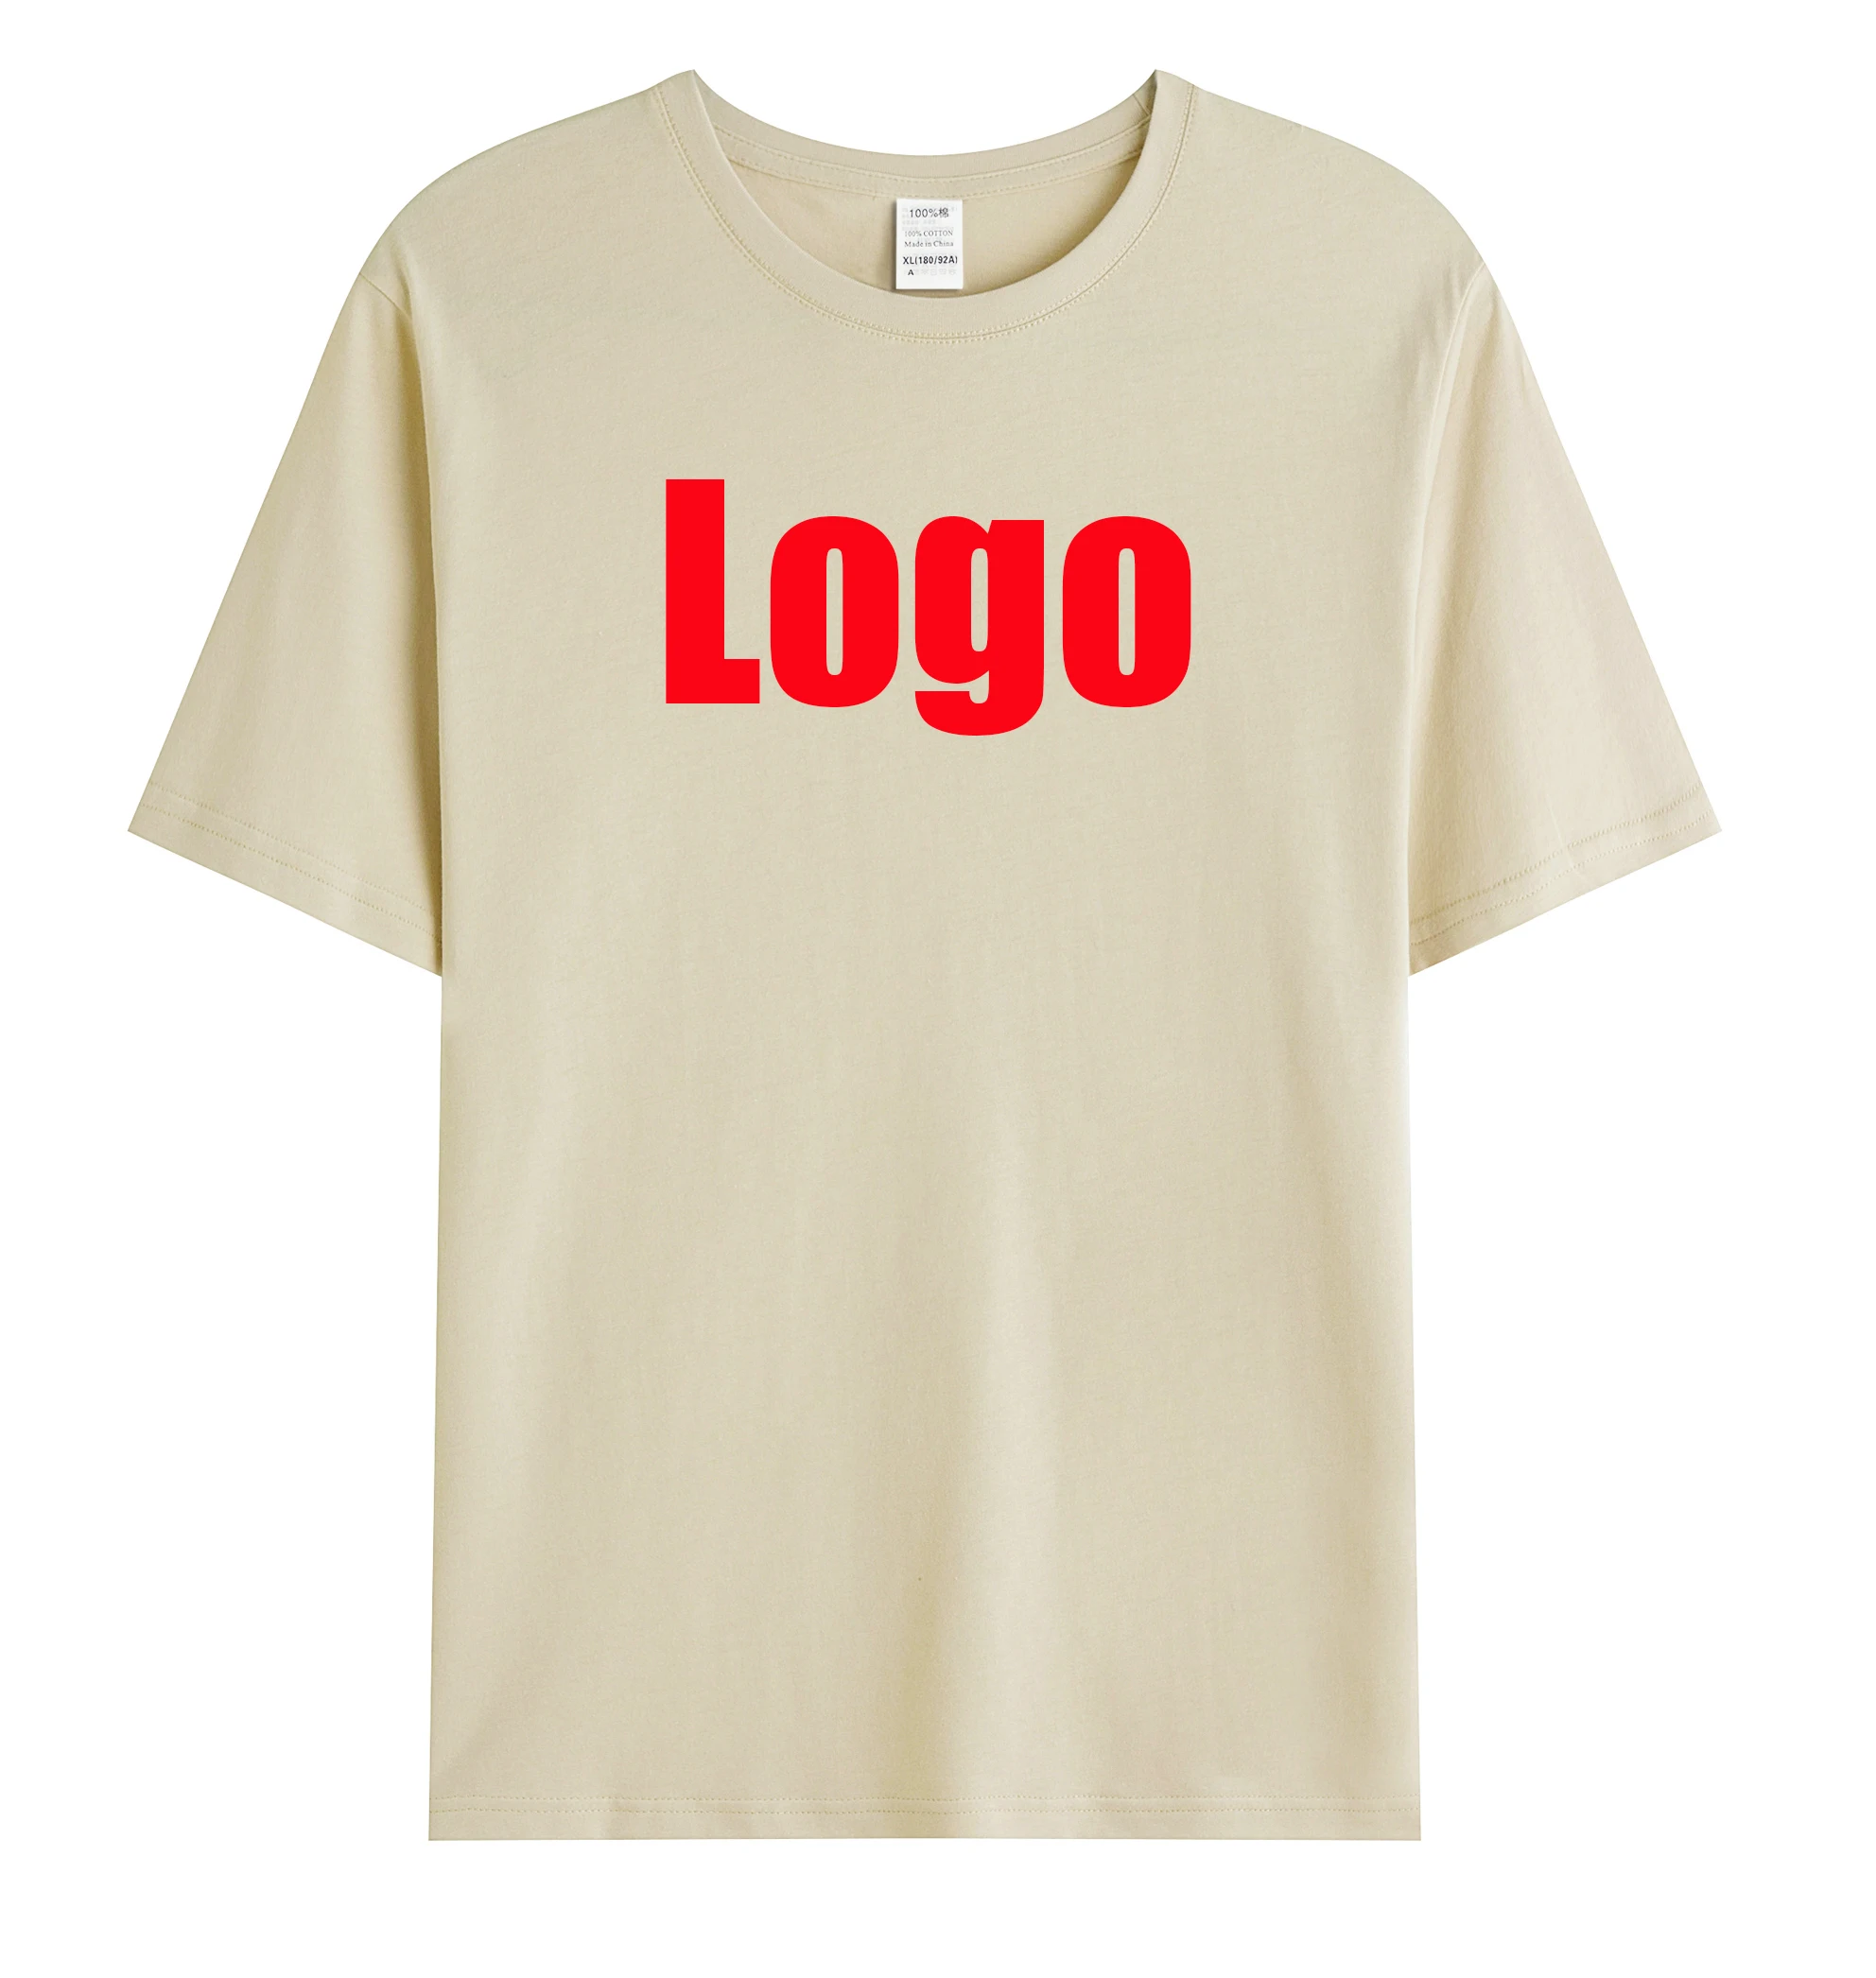 Design plain sportswear 100% cotton men t shirt custom t shirt printing blank t-shirt for men men's fitness sport